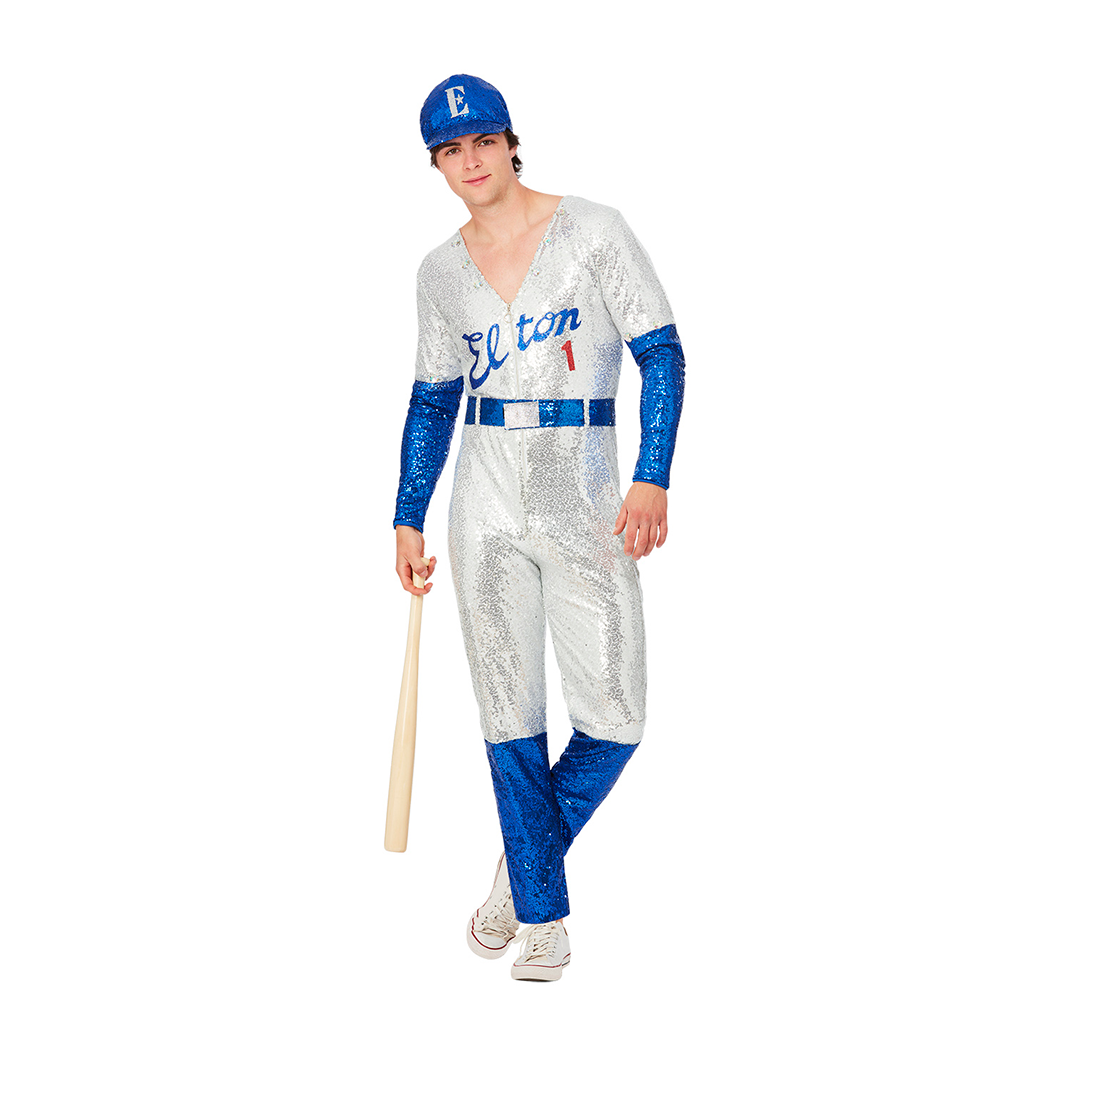 Elton John - Elton John Deluxe Sequin Baseball Costume